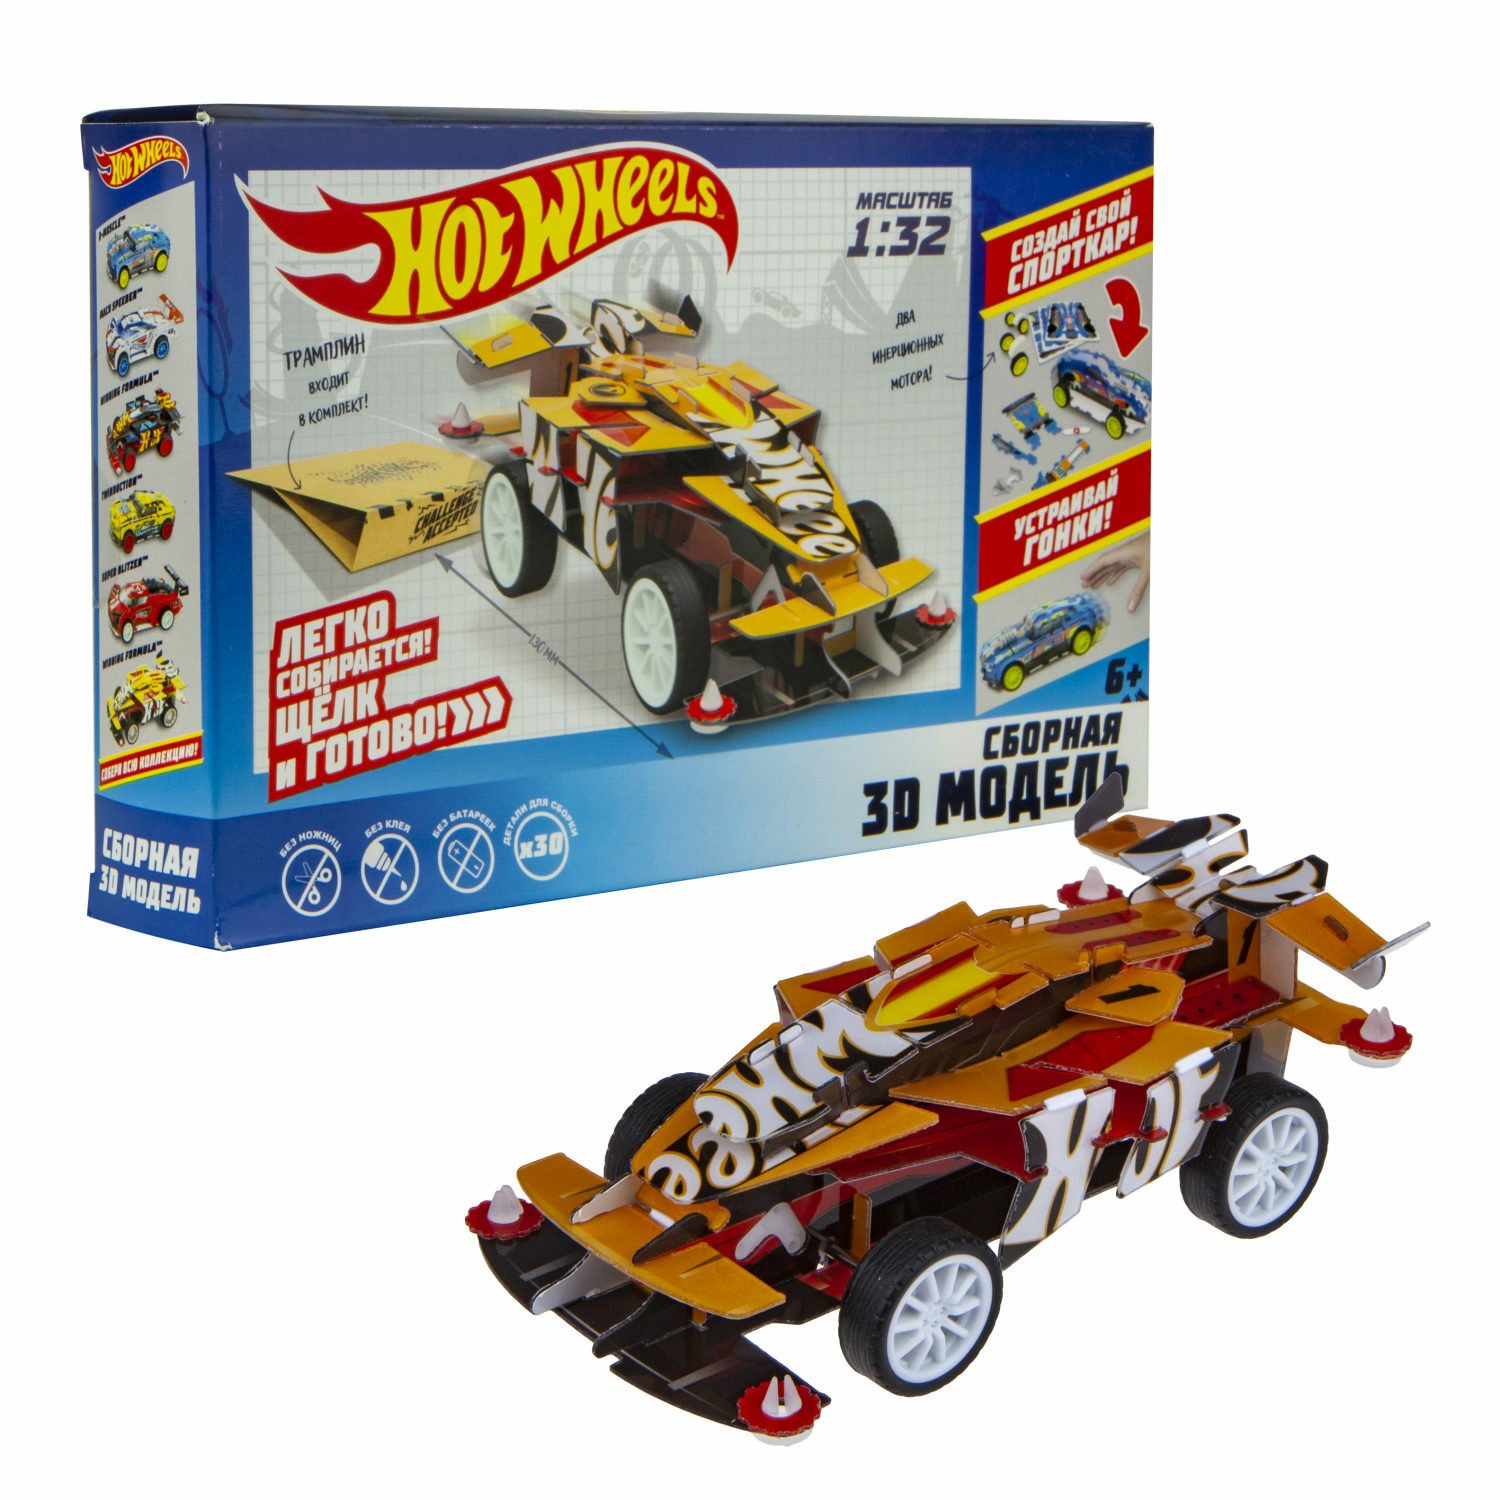 Сборная модель Mattel Hot Wheels Winning Formula